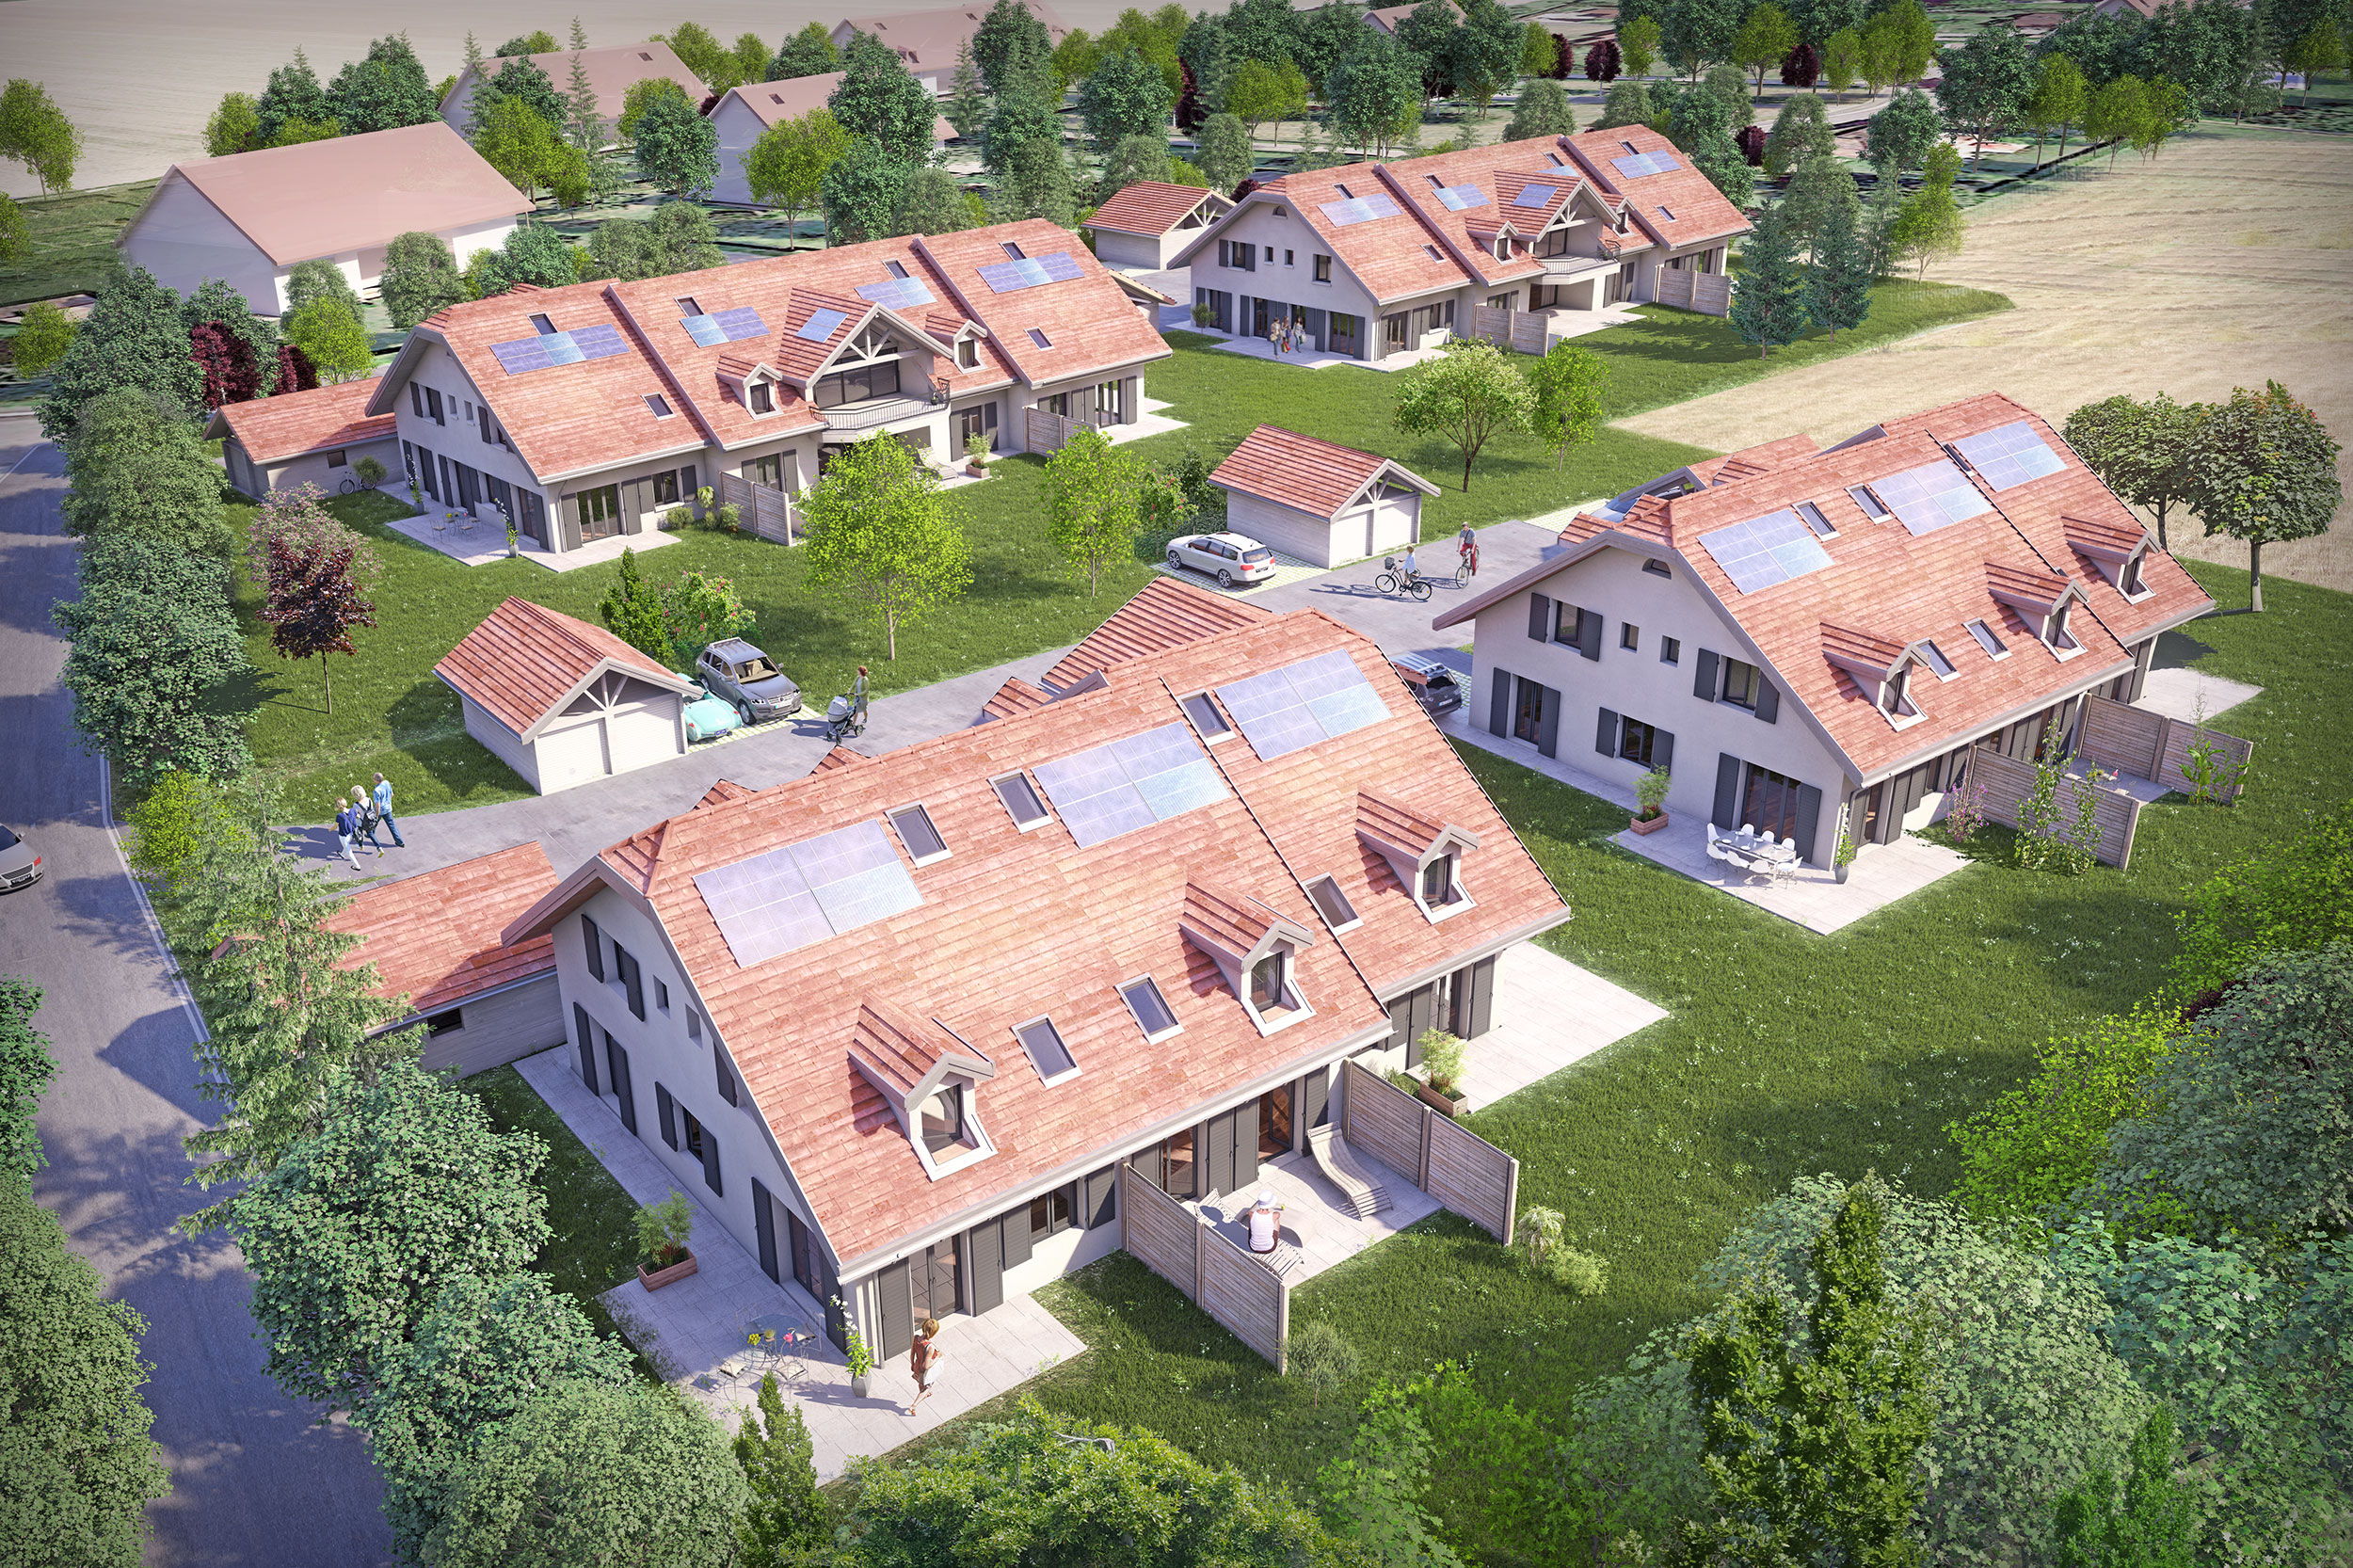 Illustration-perspective 3D villas d'un ensemble de résidences au style Vaudois, vue d'ensemble du projet